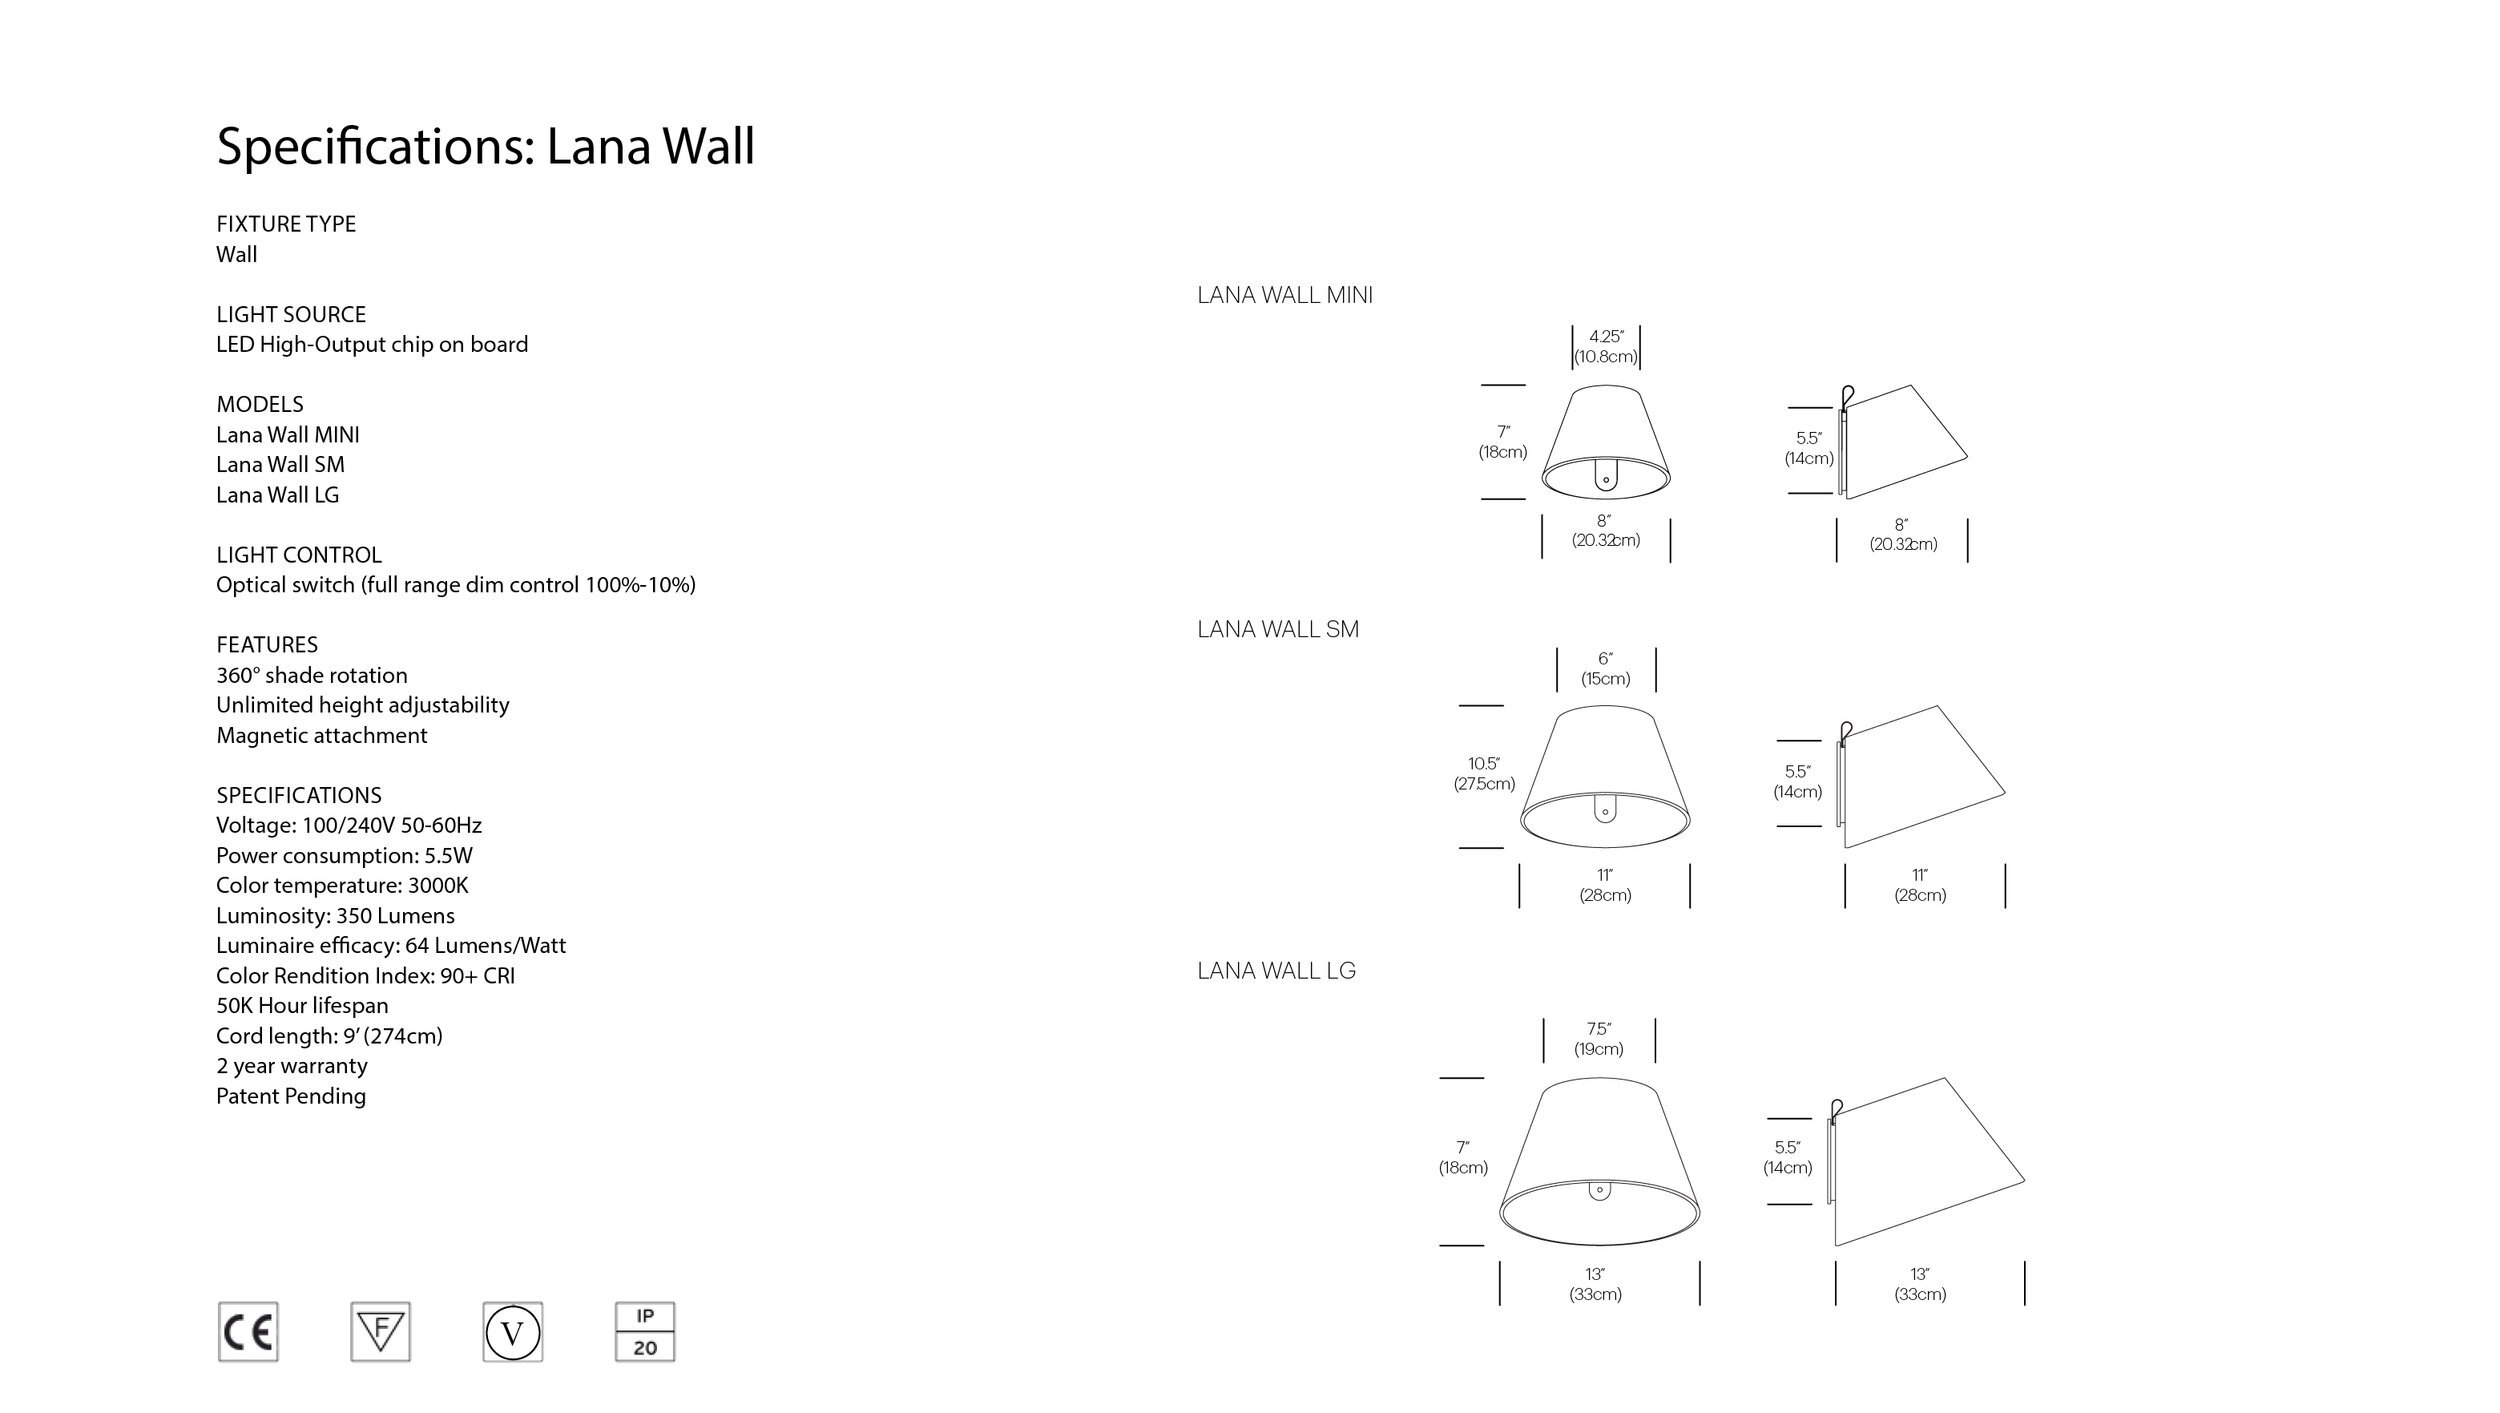 EU+Lana+wall+dims (image for EU spec sheets).jpg